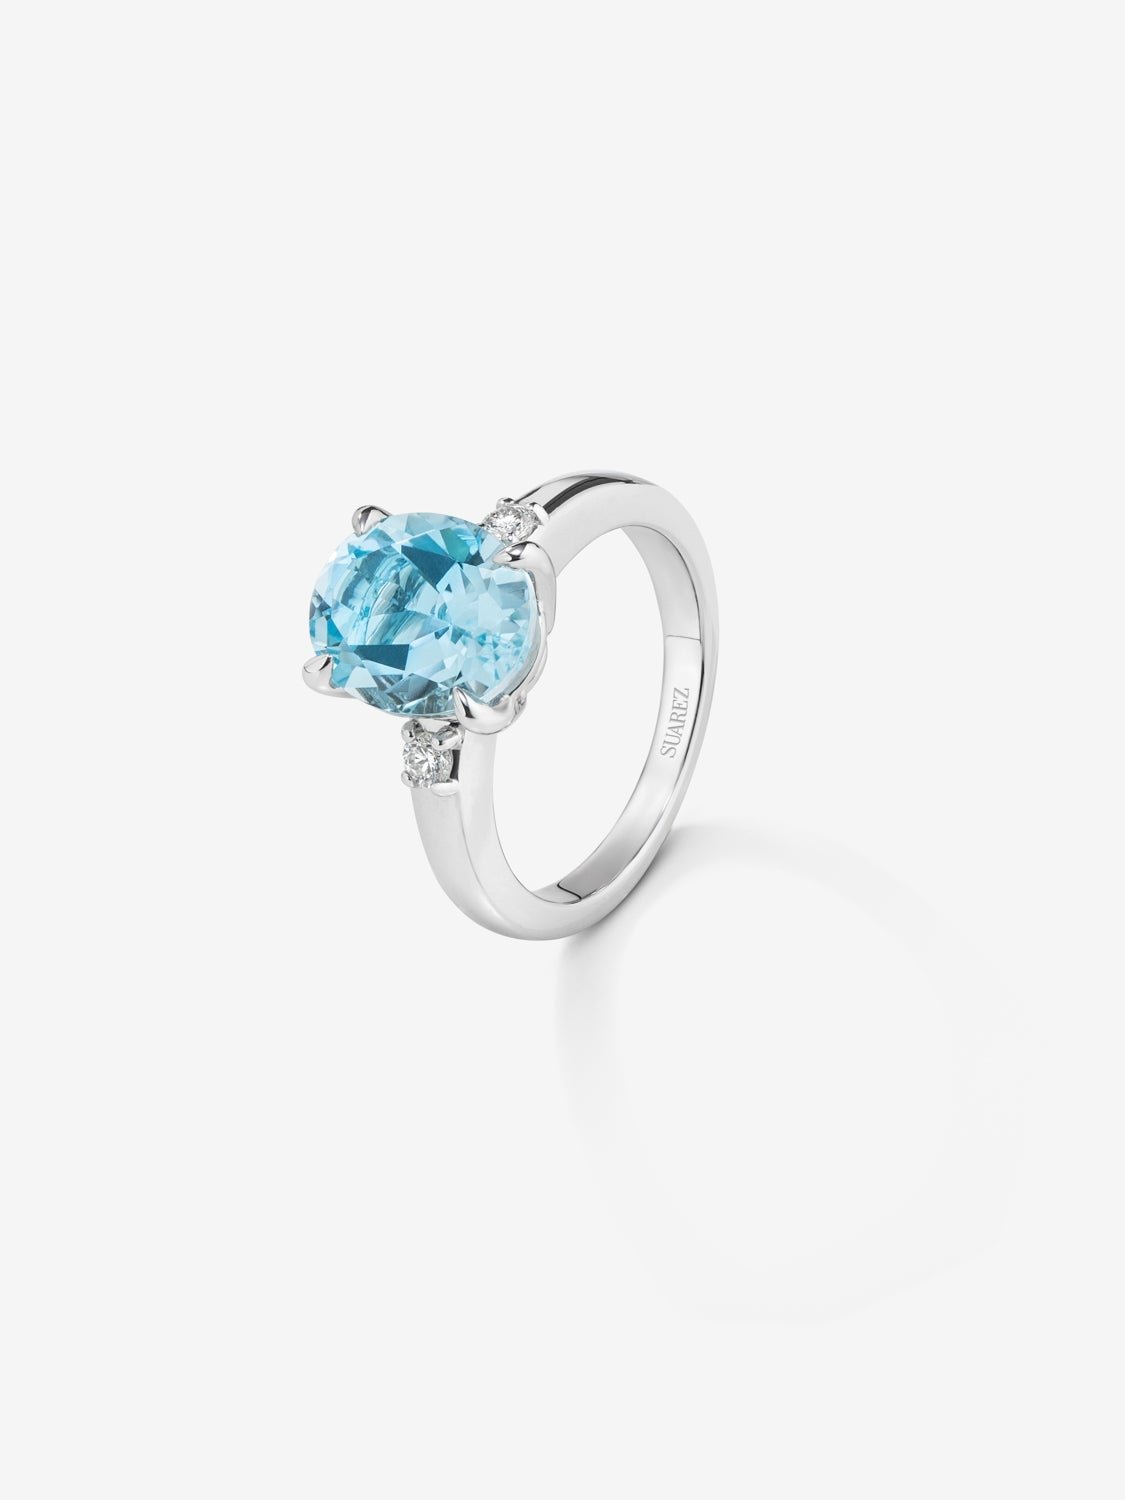 Anillo tresillo de plata 925 con topacio azul sky en talla oval de 3,78 cts y 2 diamantes en talla brillante con un total de 0,11 cts